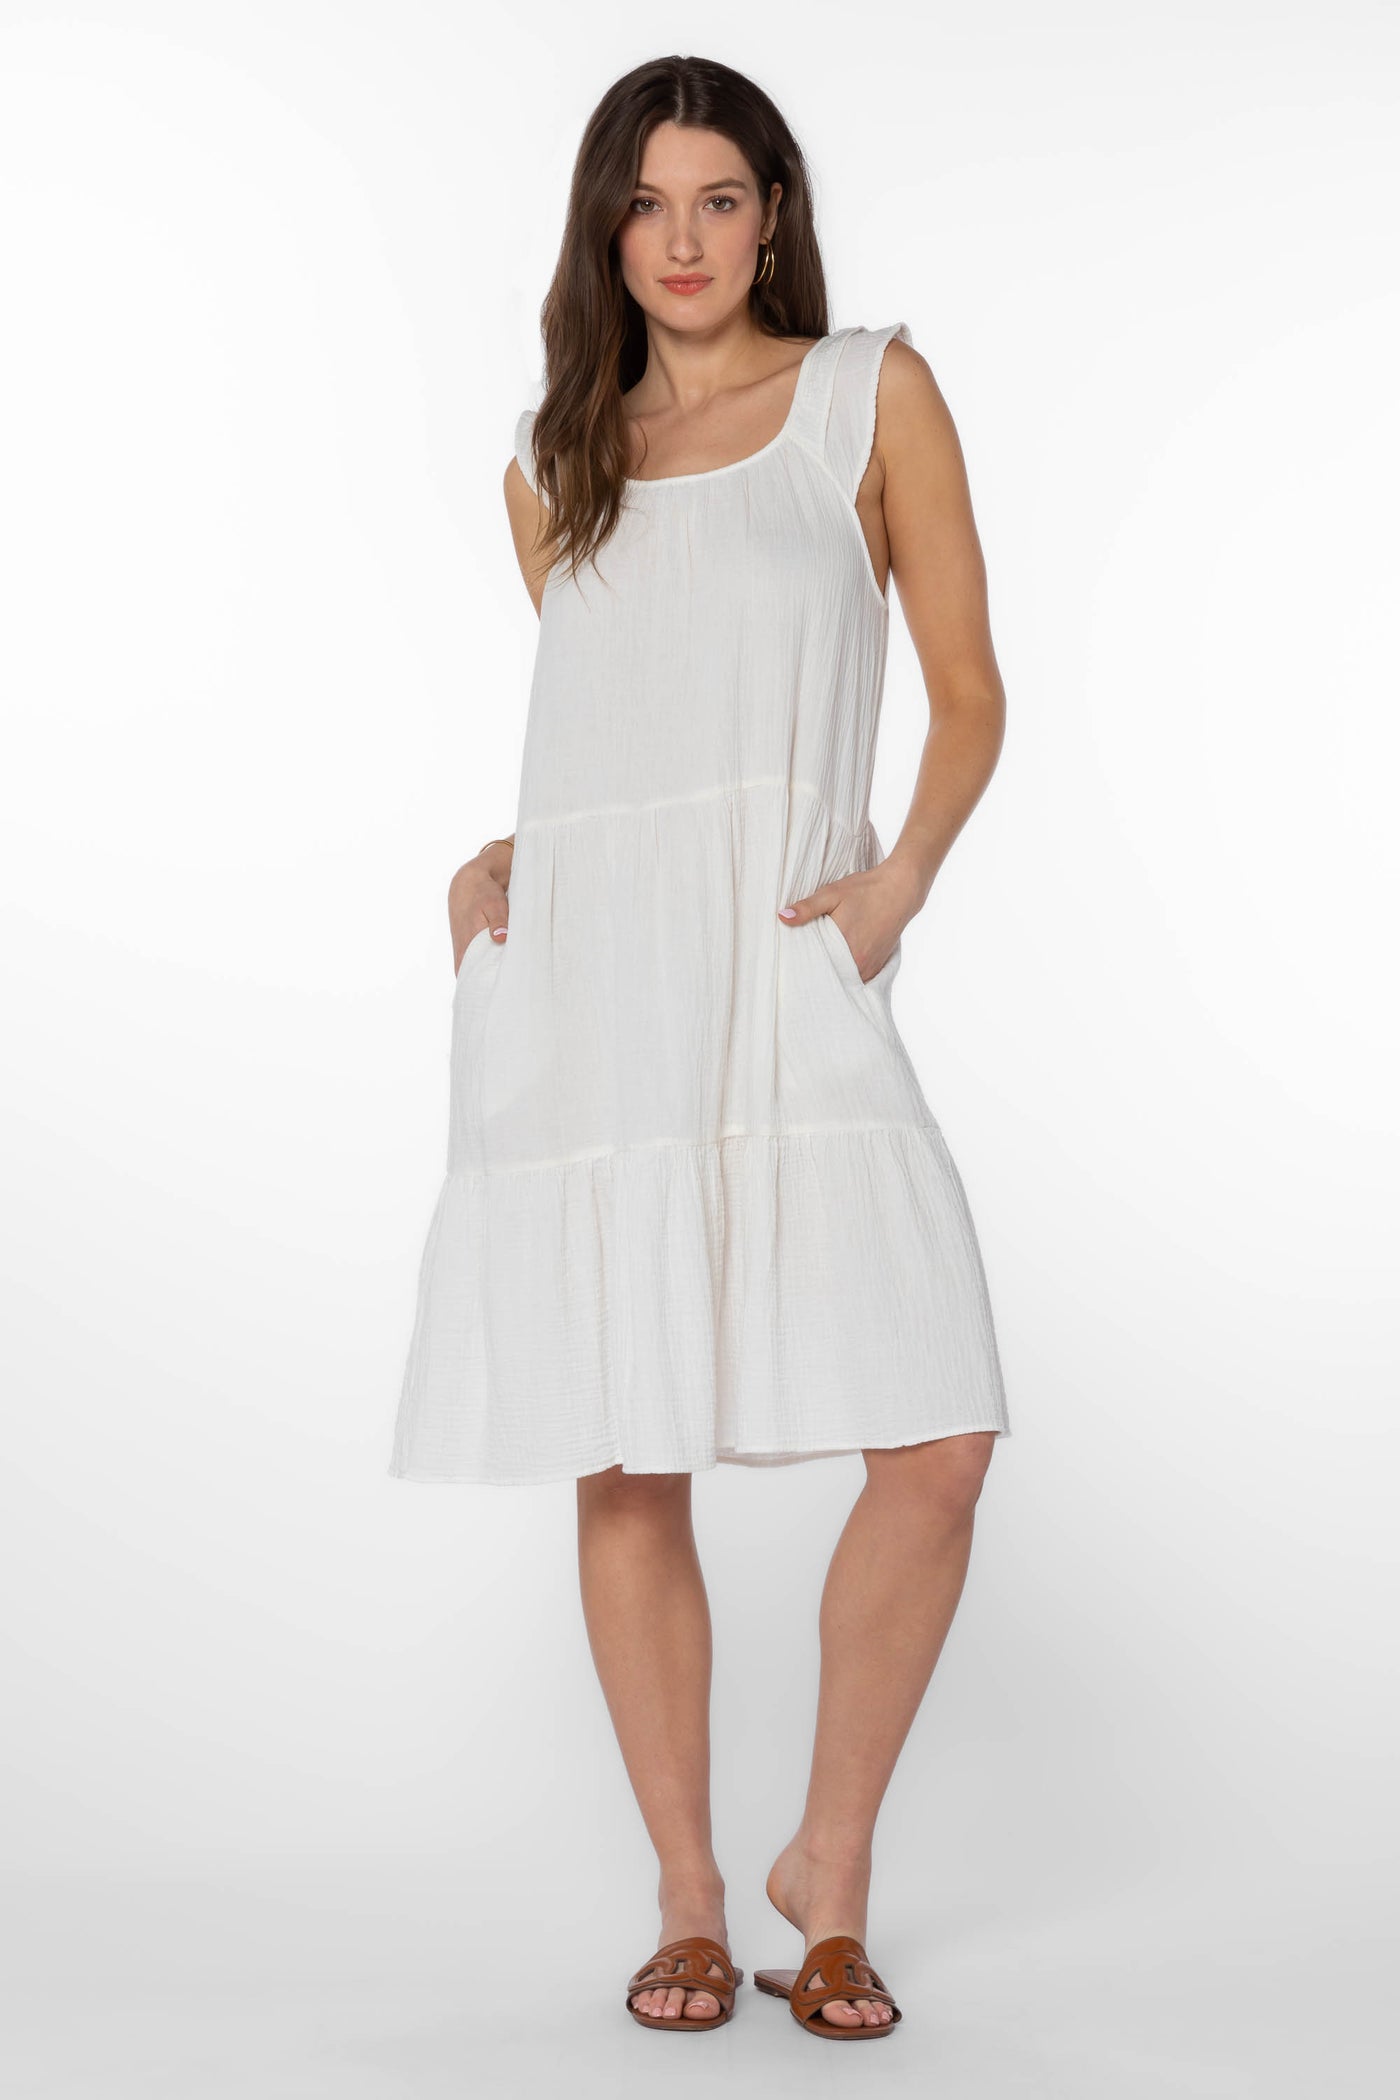 Prism White Dress - Dresses - Velvet Heart Clothing